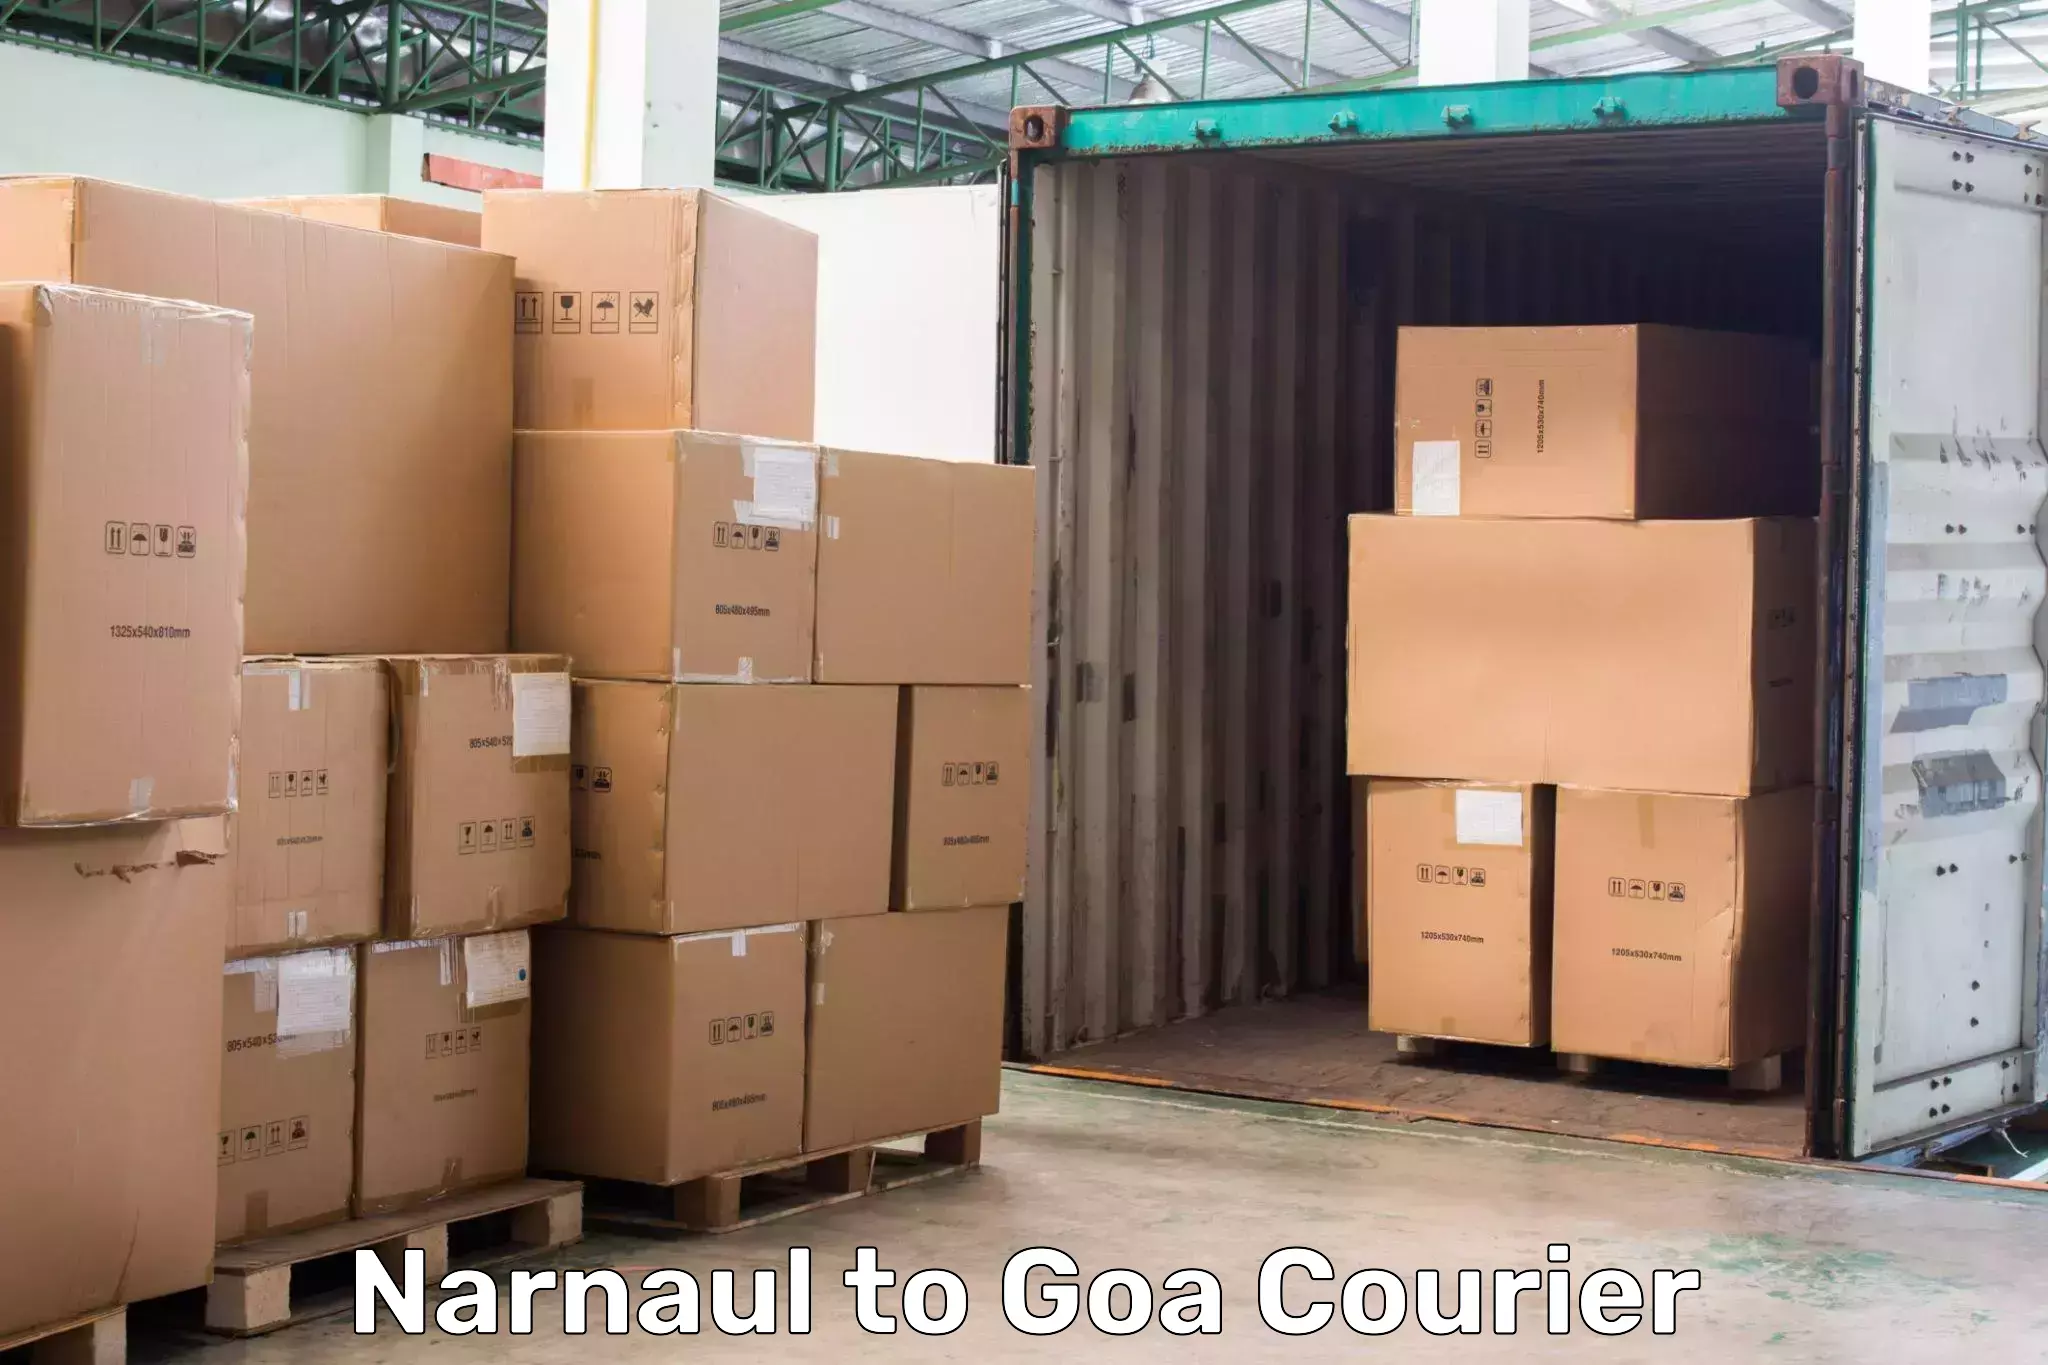 User-friendly courier app Narnaul to Vasco da Gama